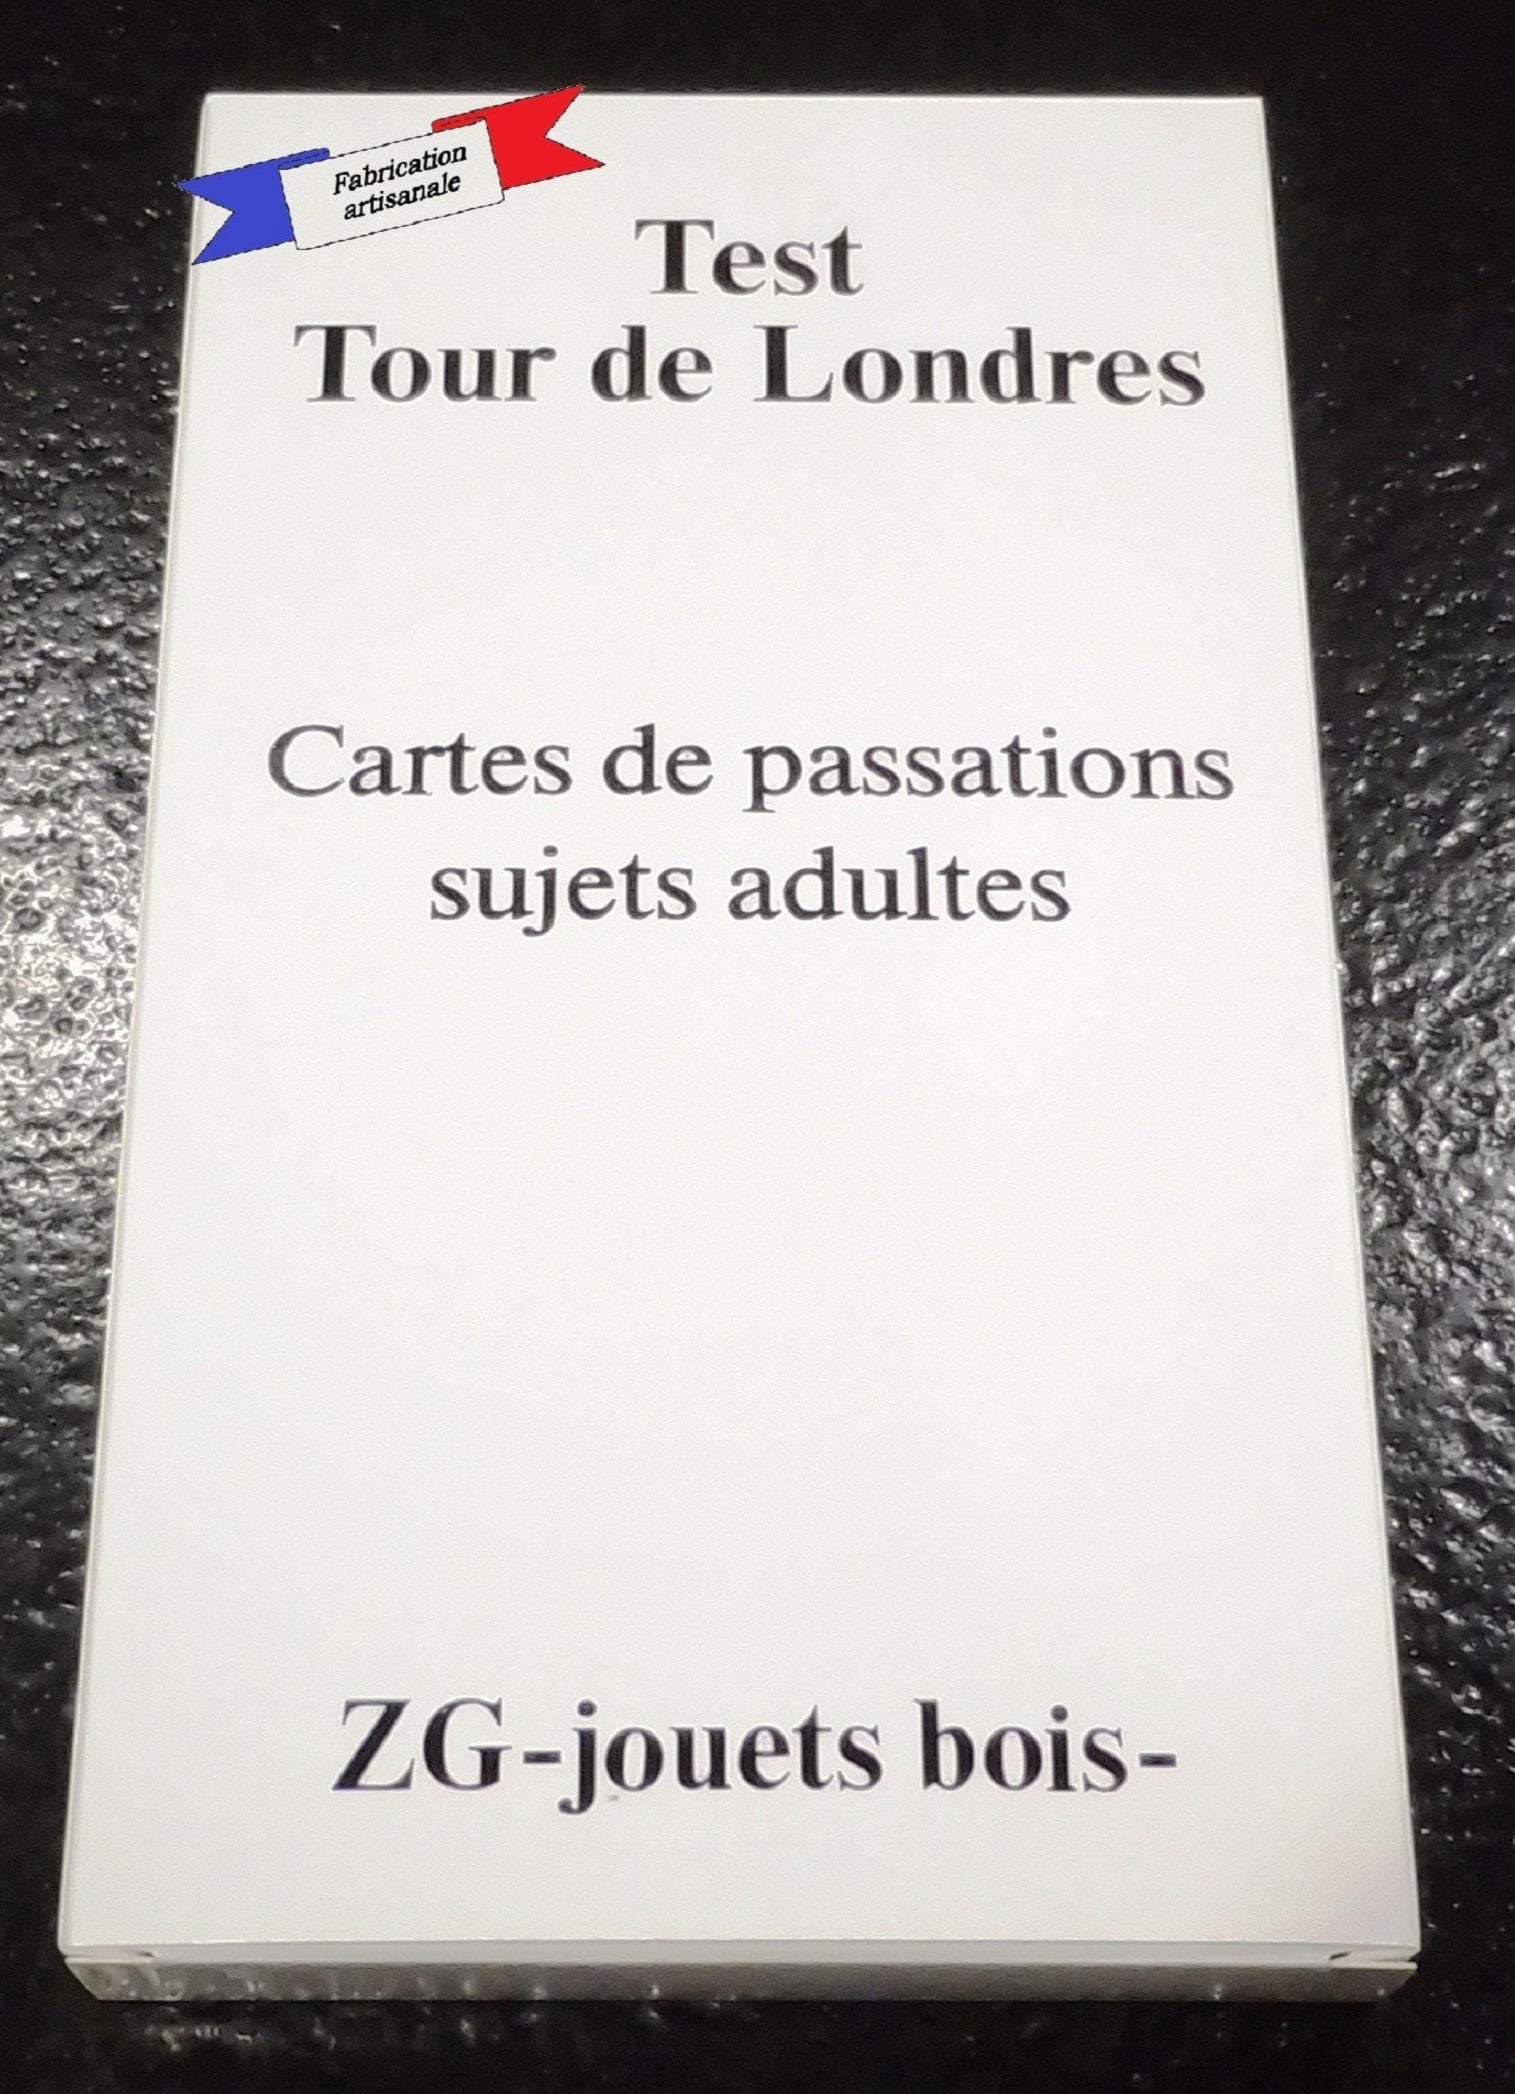 Cartes de passation pour sujets adultes réalisation test de la tour de Londres normes Shallice fabrication française artisanale par ZG-jouetsbois-